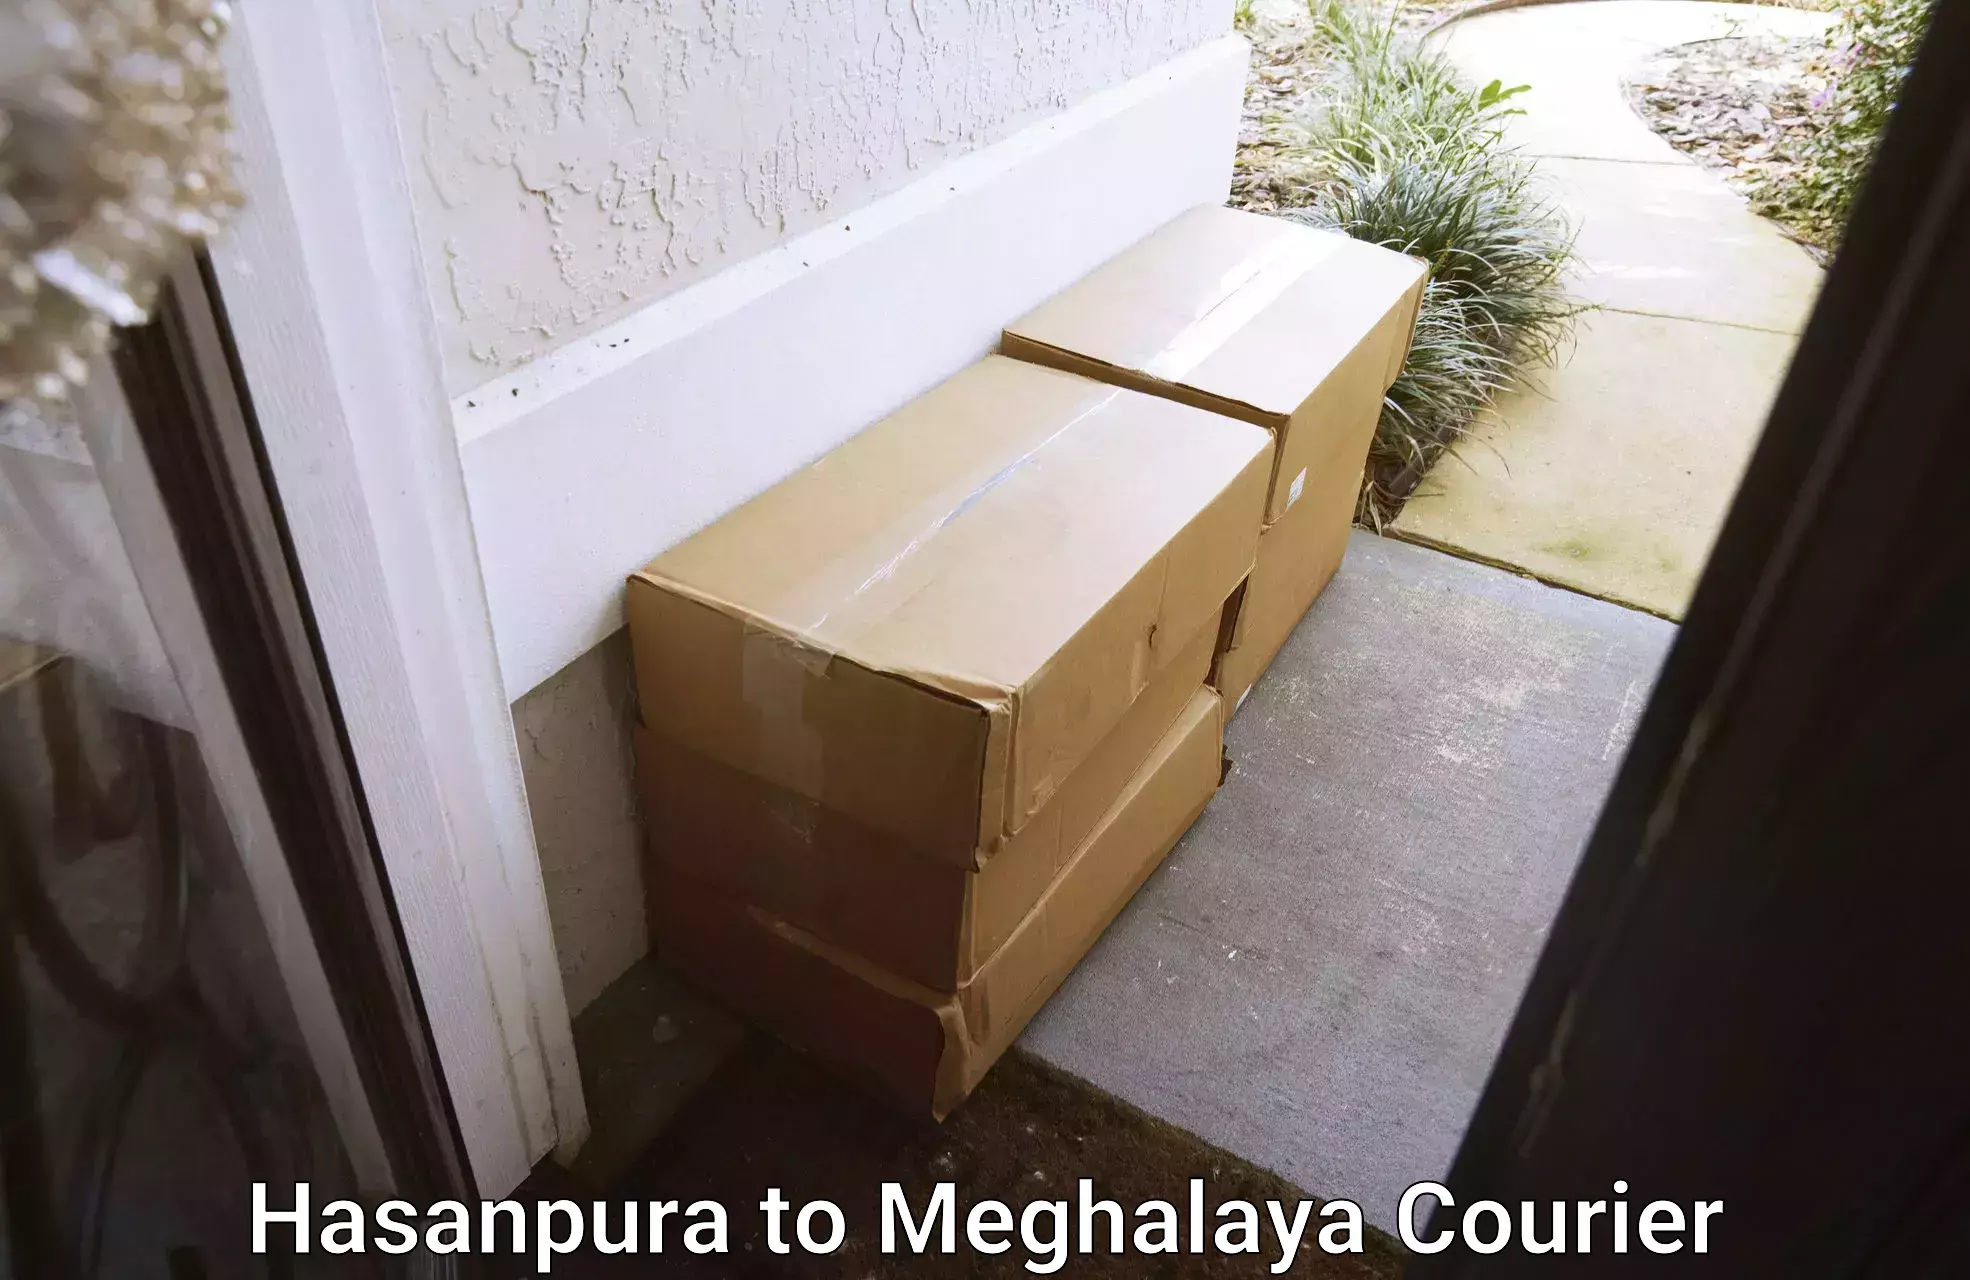 Efficient furniture transport in Hasanpura to NIT Meghalaya